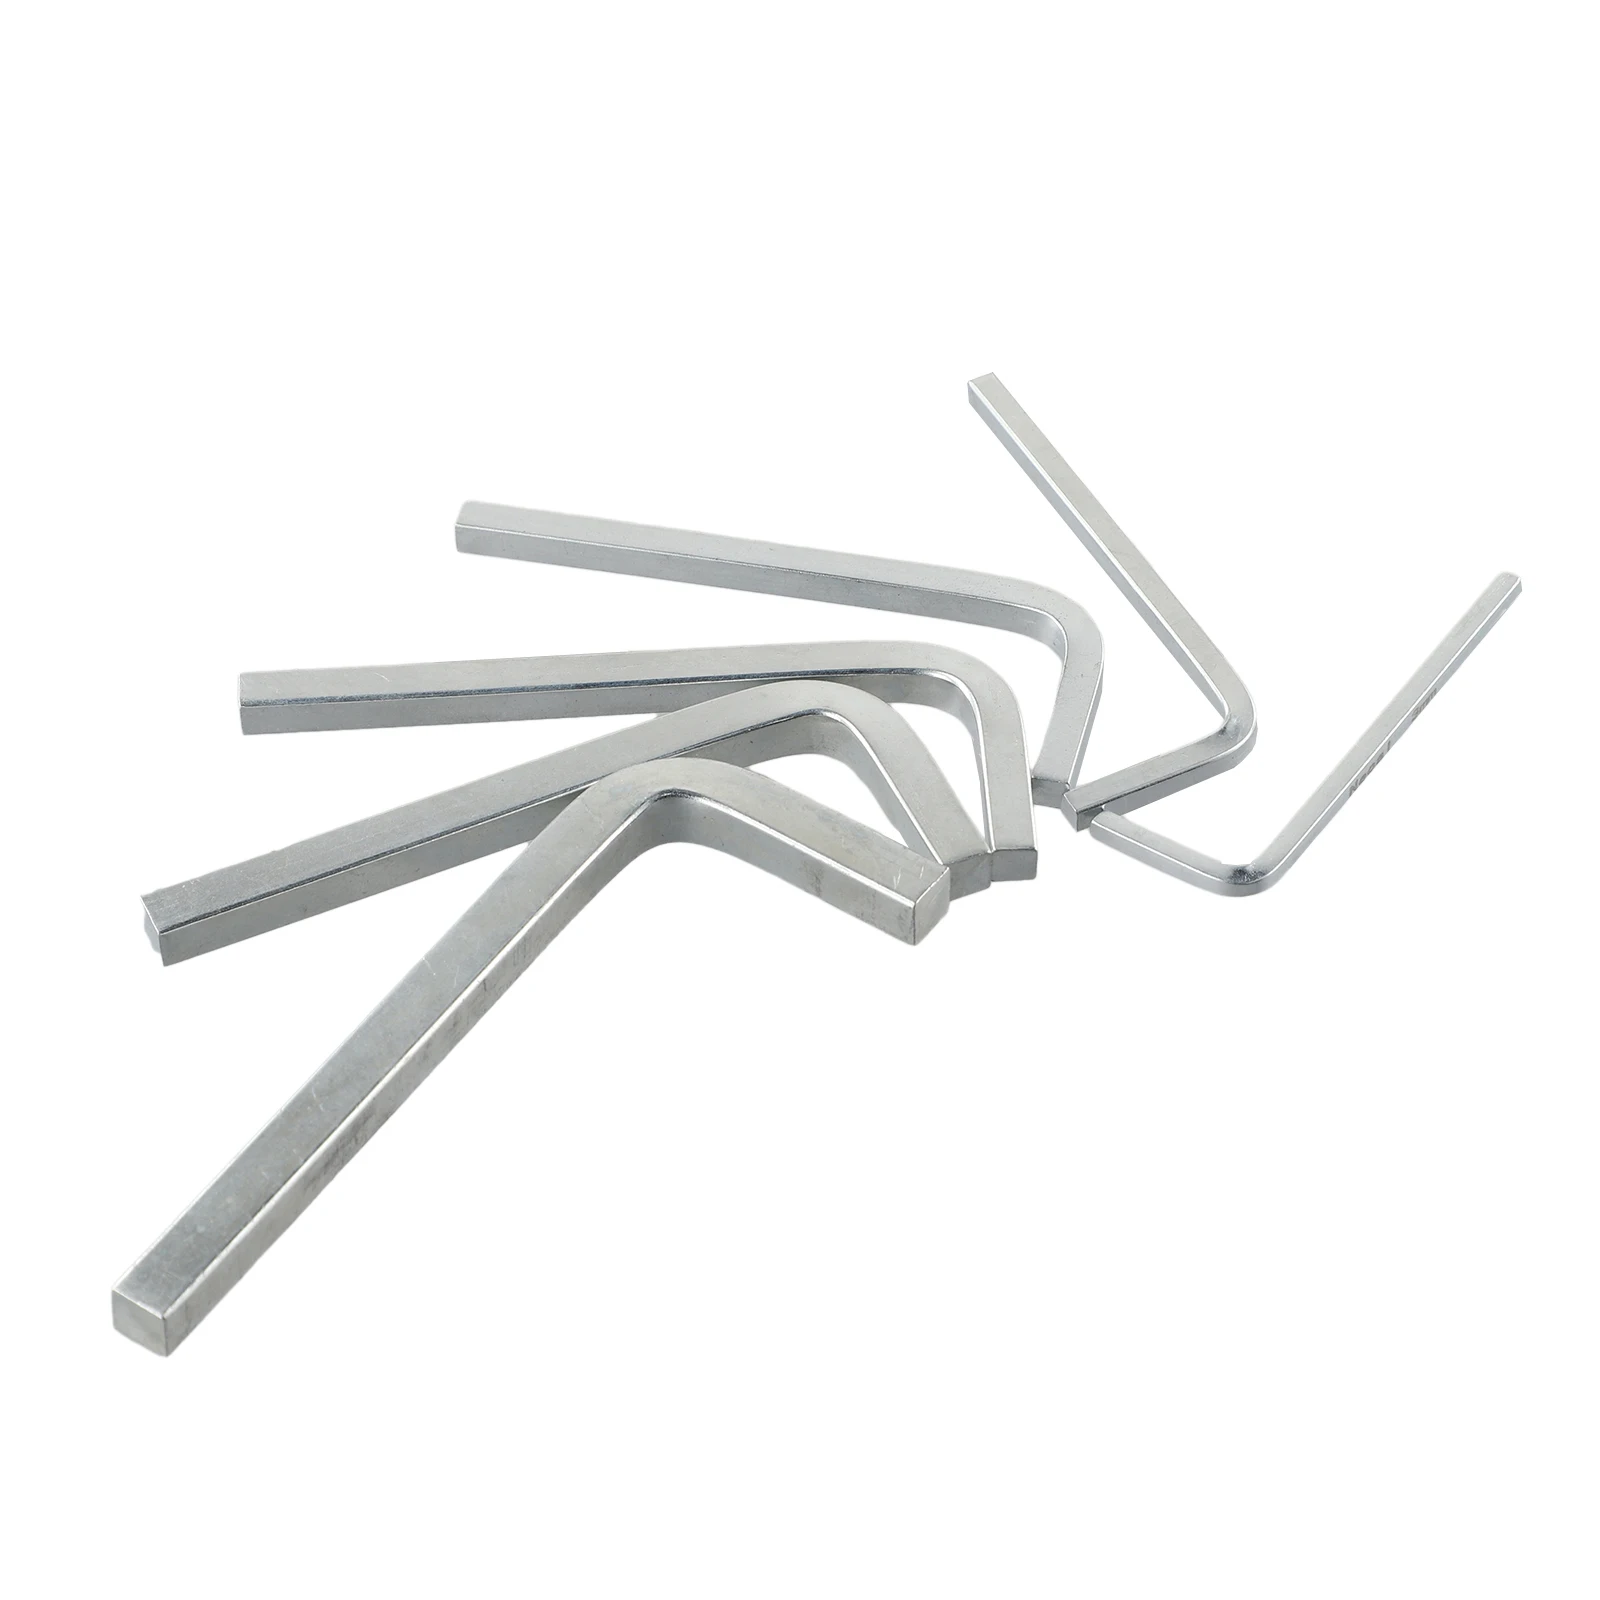 

Screwdriver Set 6Pcs L Shape Square Head Wrenches (3 8mm) for Tightening Square Screws in Chromium Vanadium Steel